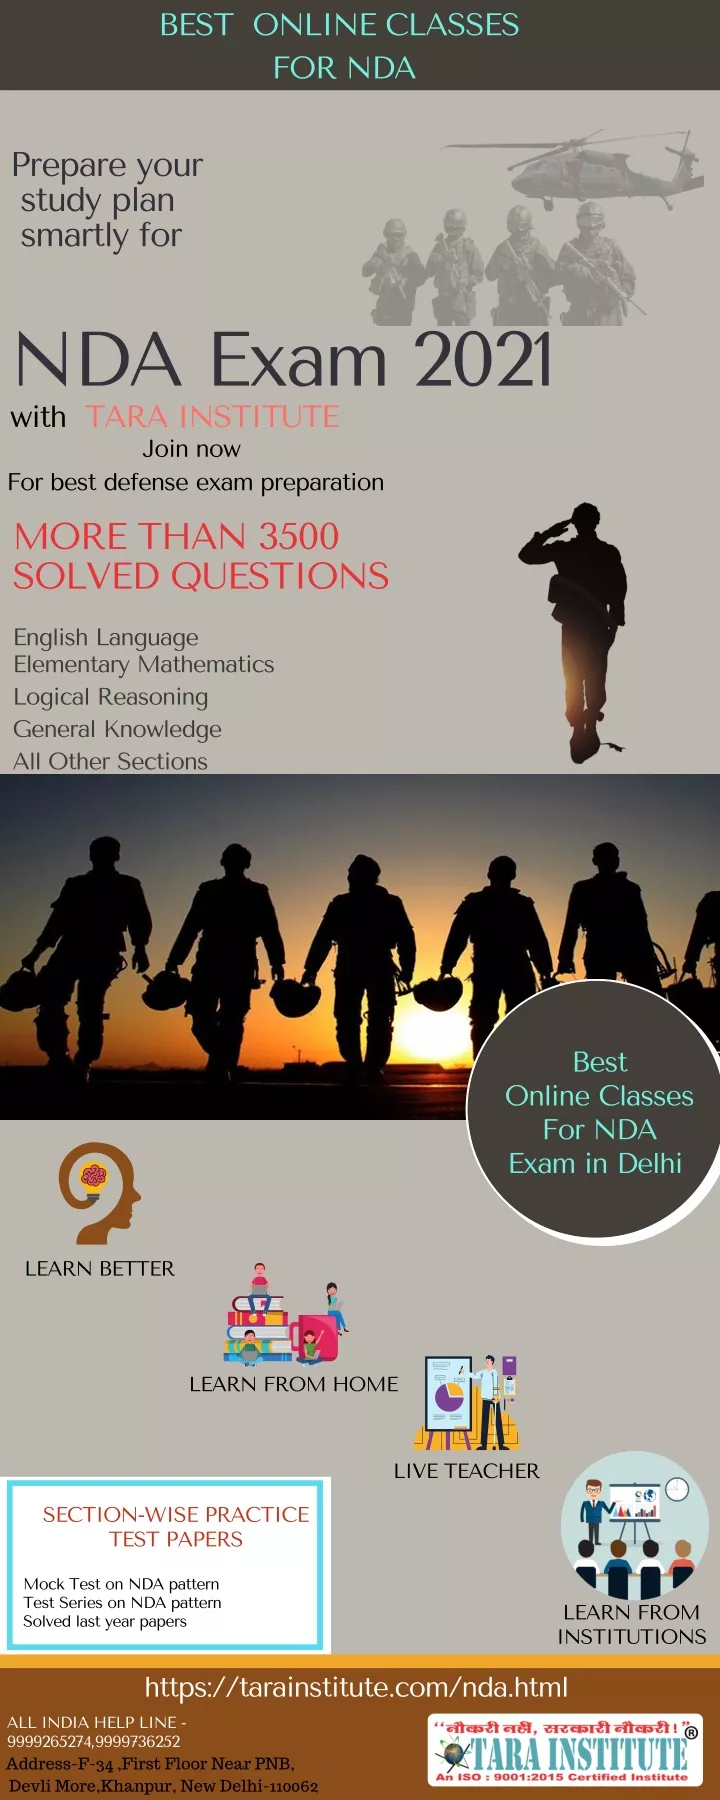 best online classes for nda